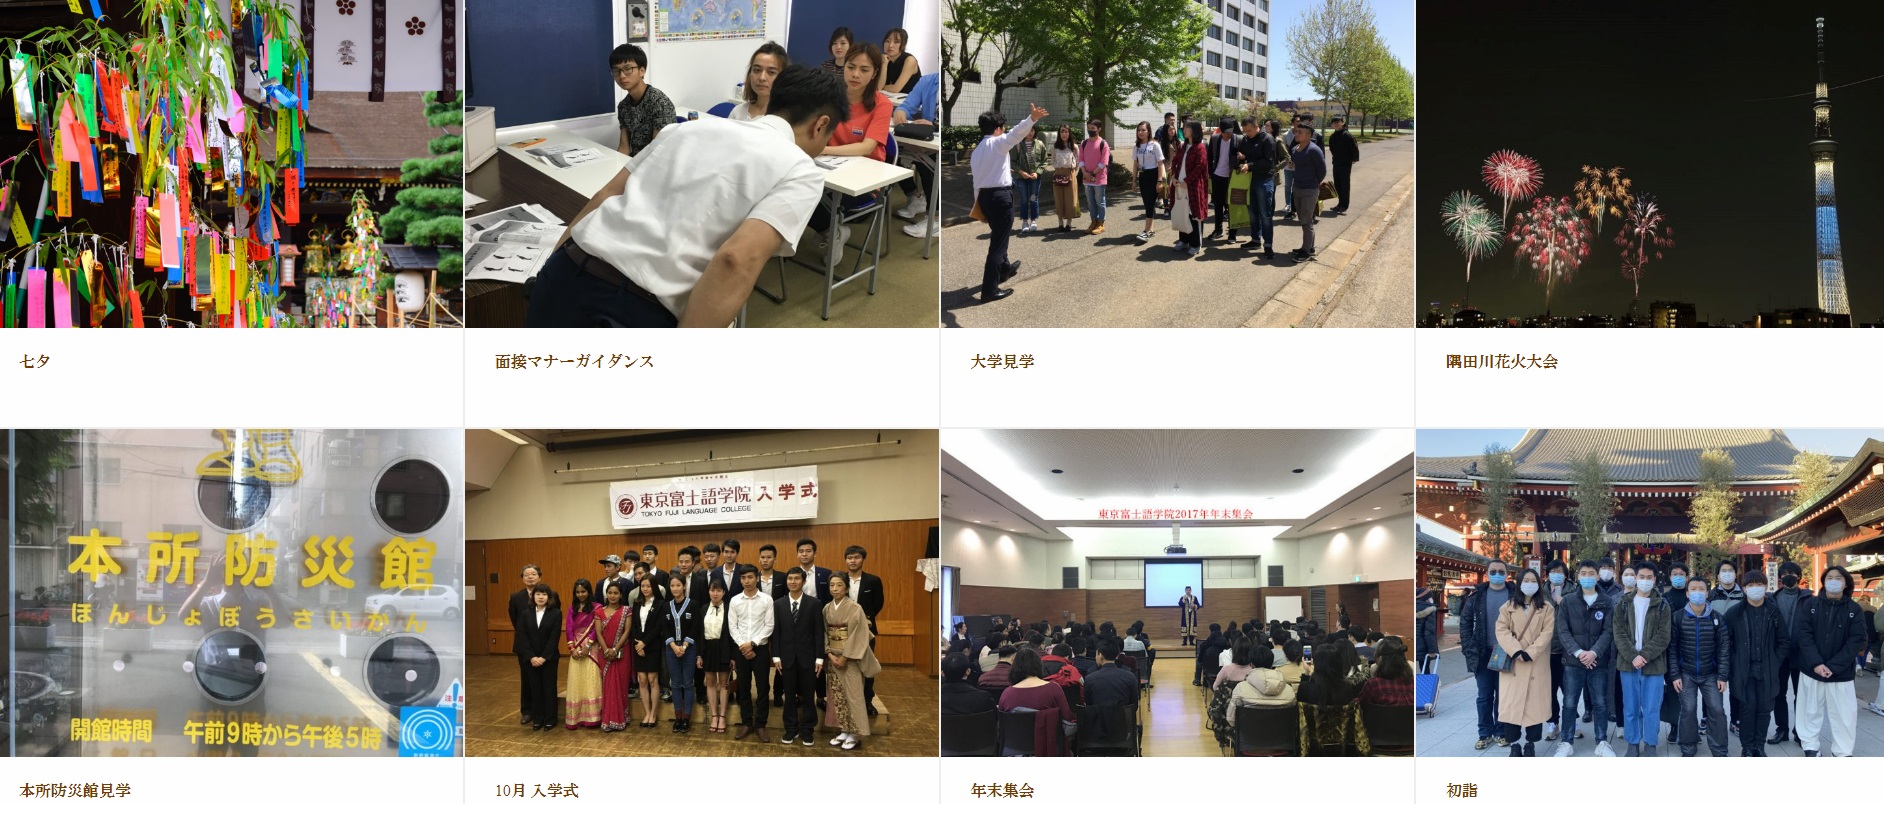 Học viện tiếng Nhật Tokyo Fuji 3 tiện ích